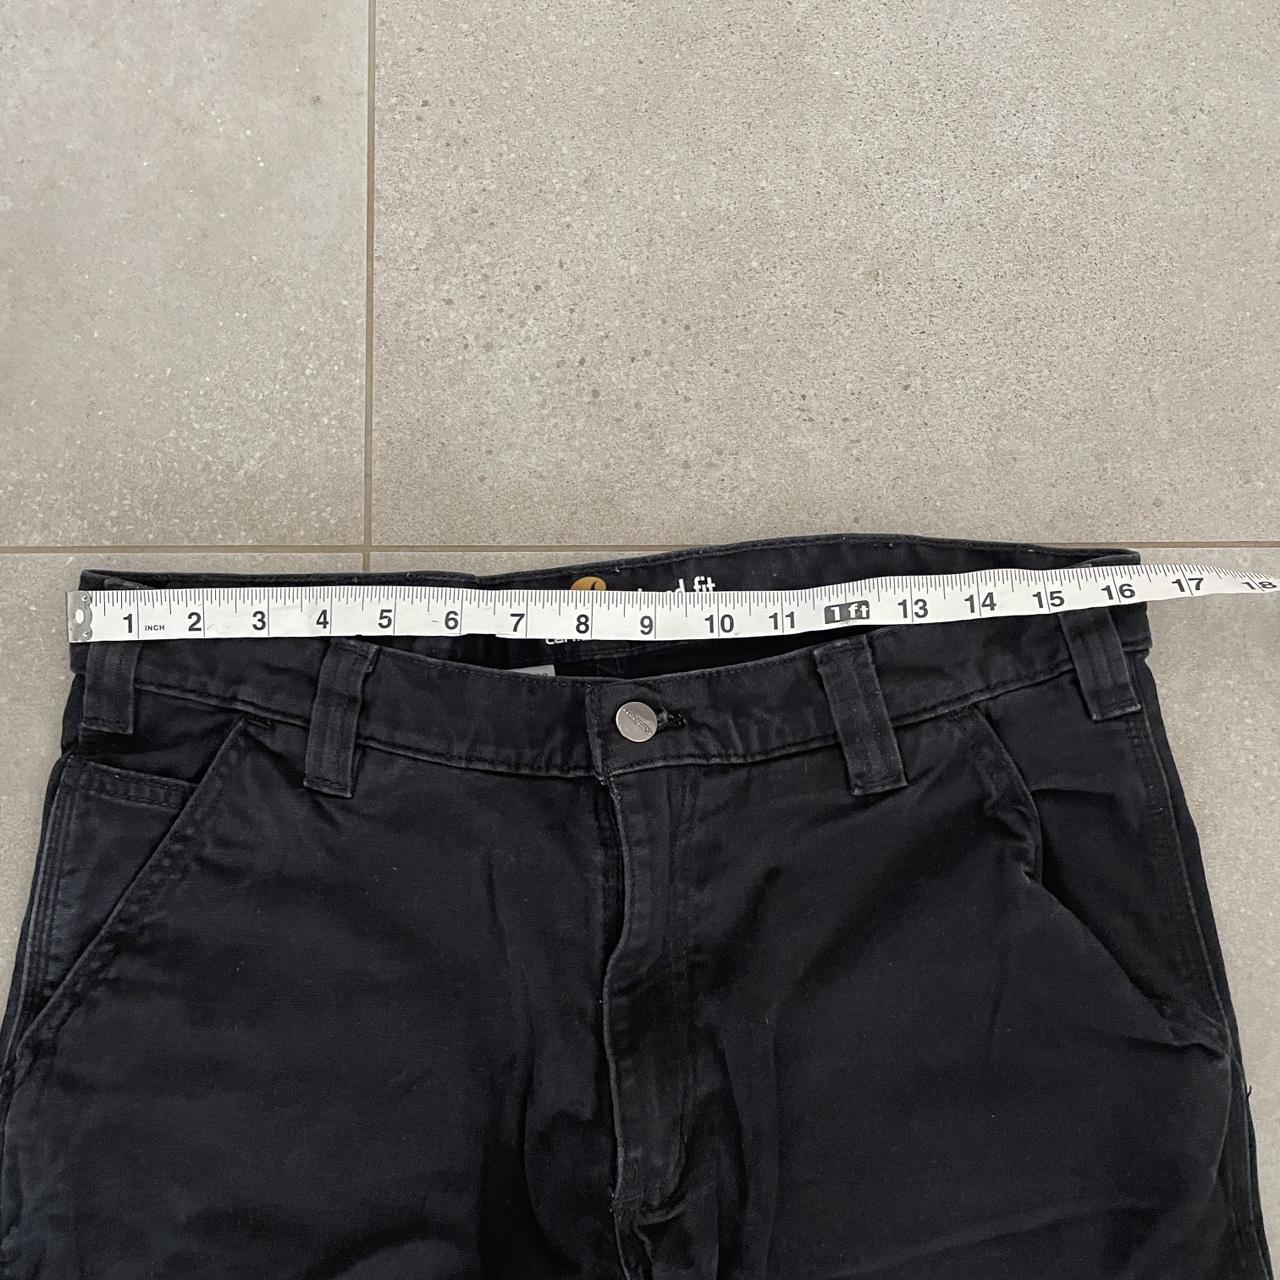 Black Carhartt Pants Men’s size W33” By L27” Great... - Depop